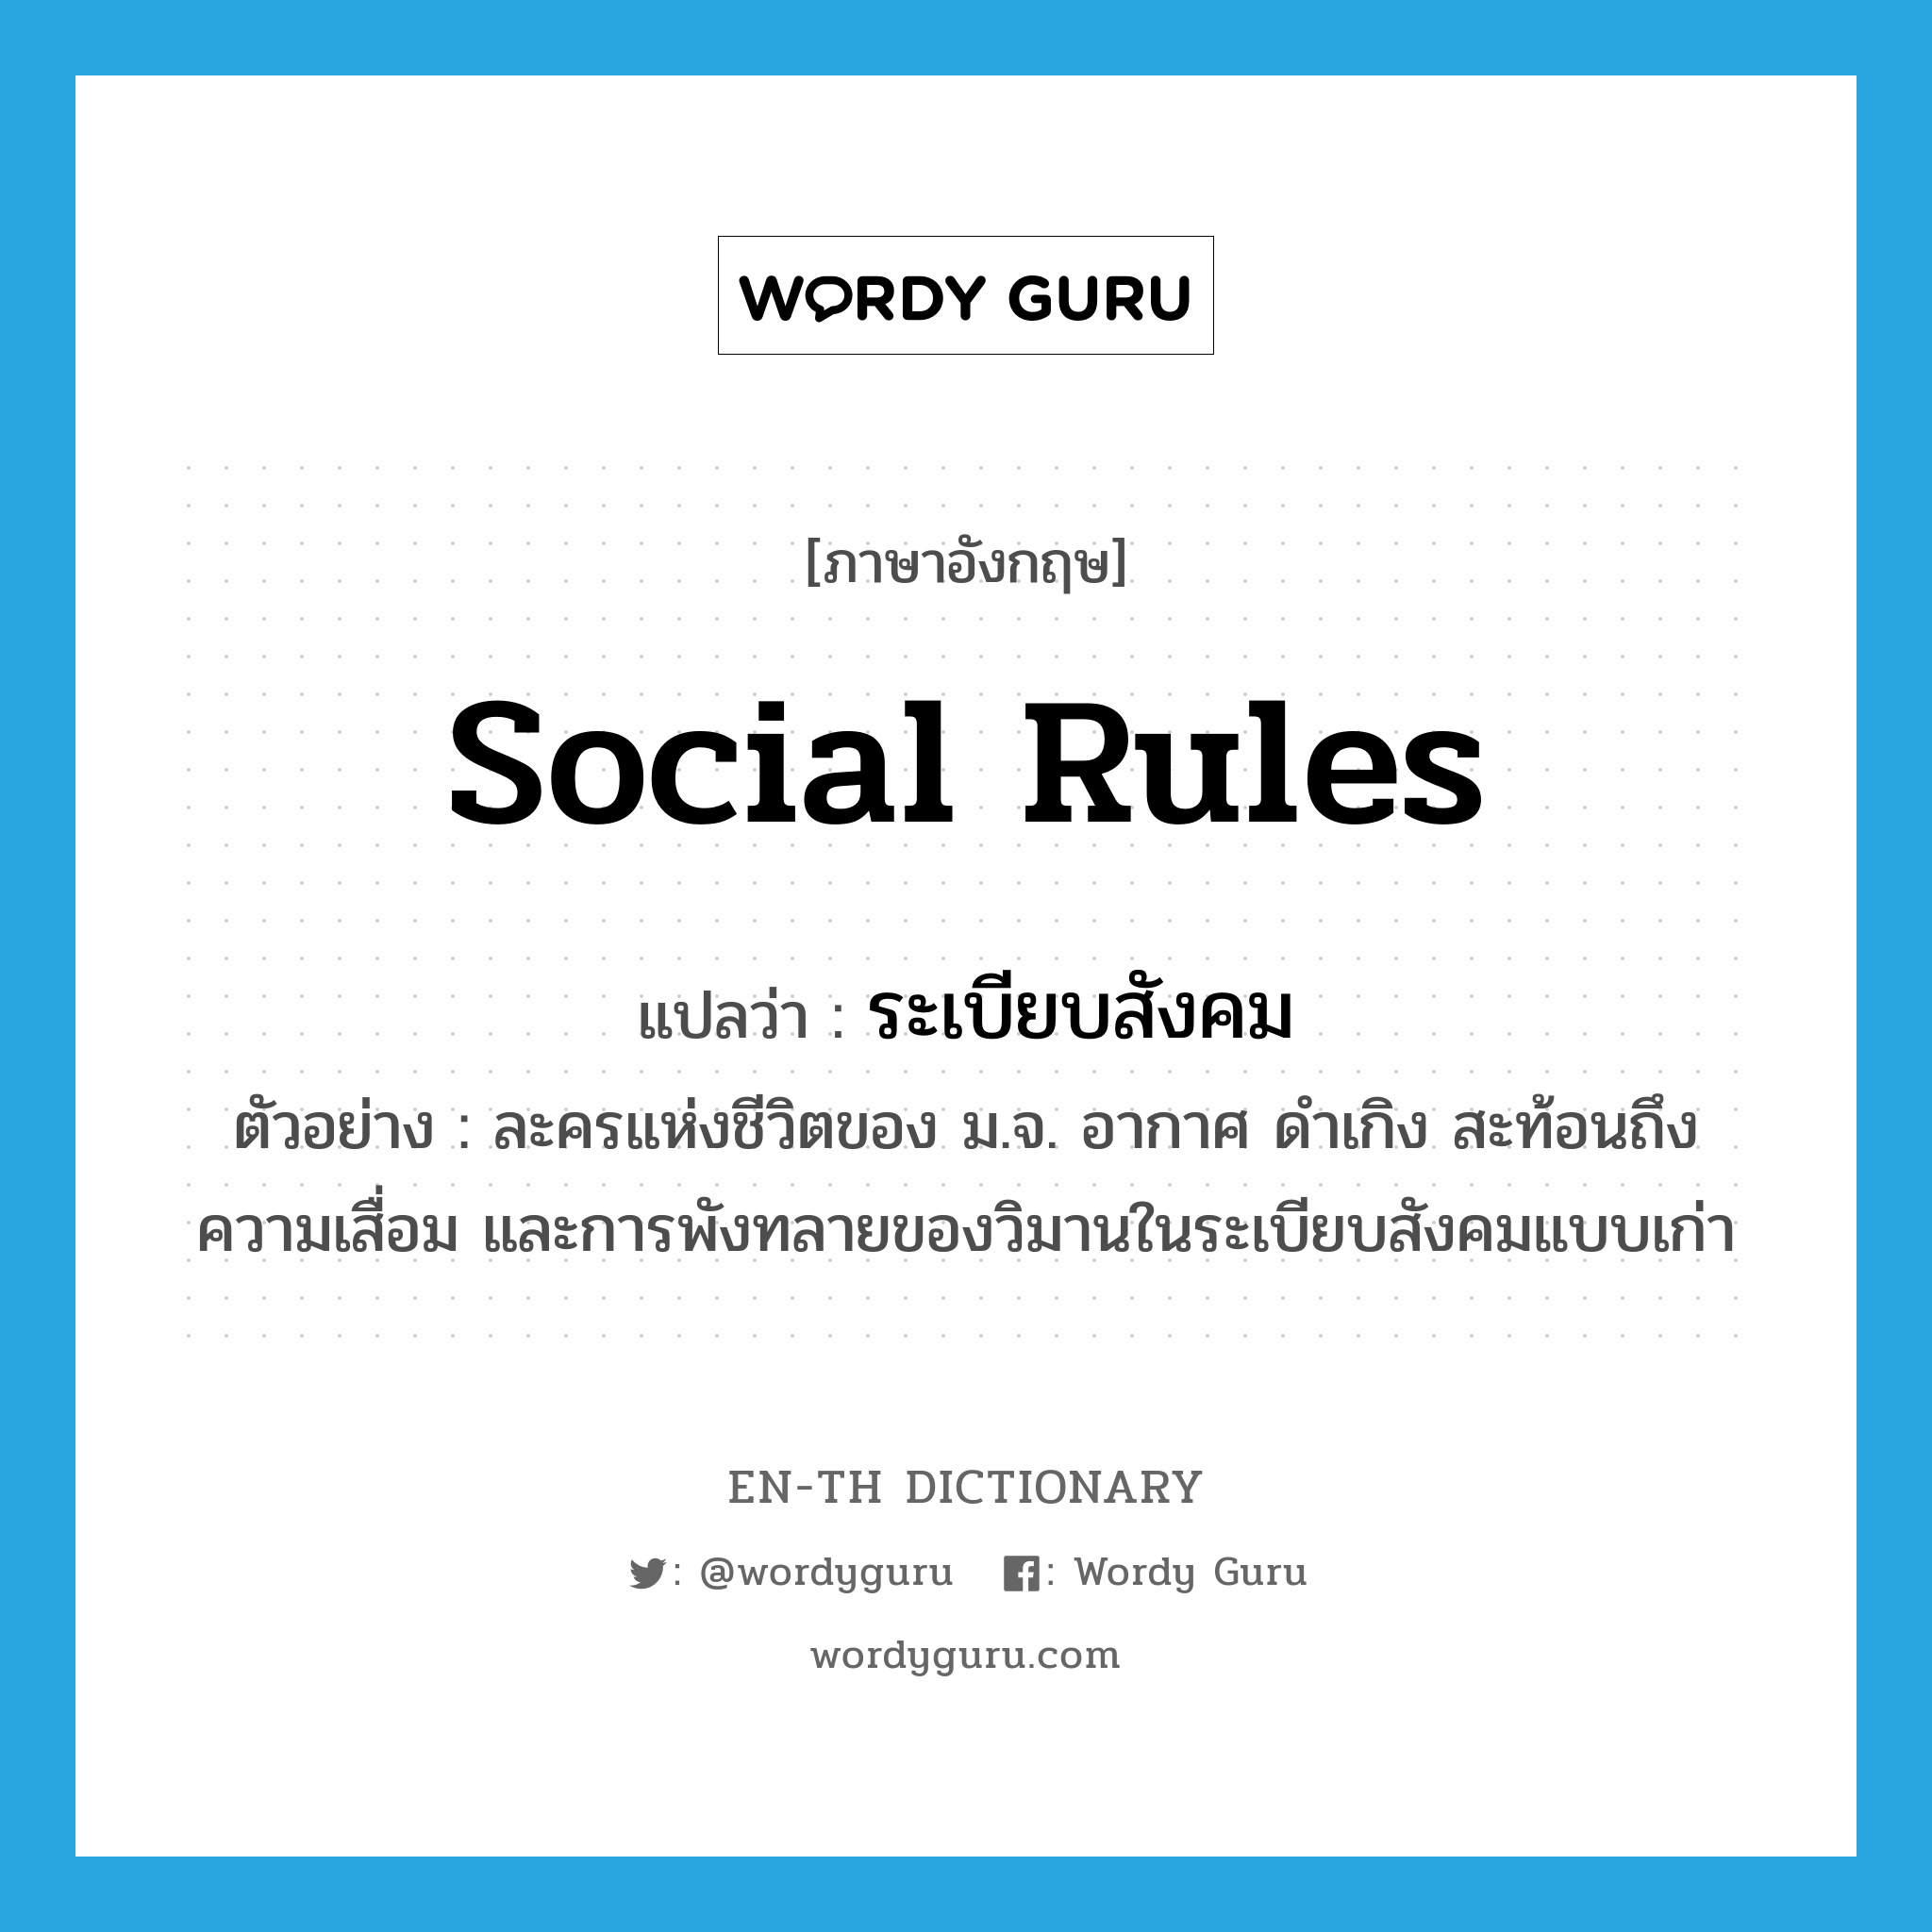 social rules แปลว่า?, คำศัพท์ภาษาอังกฤษ social rules แปลว่า ระเบียบสังคม ประเภท N ตัวอย่าง ละครแห่งชีวิตของ ม.จ. อากาศ ดำเกิง สะท้อนถึงความเสื่อม และการพังทลายของวิมานในระเบียบสังคมแบบเก่า หมวด N